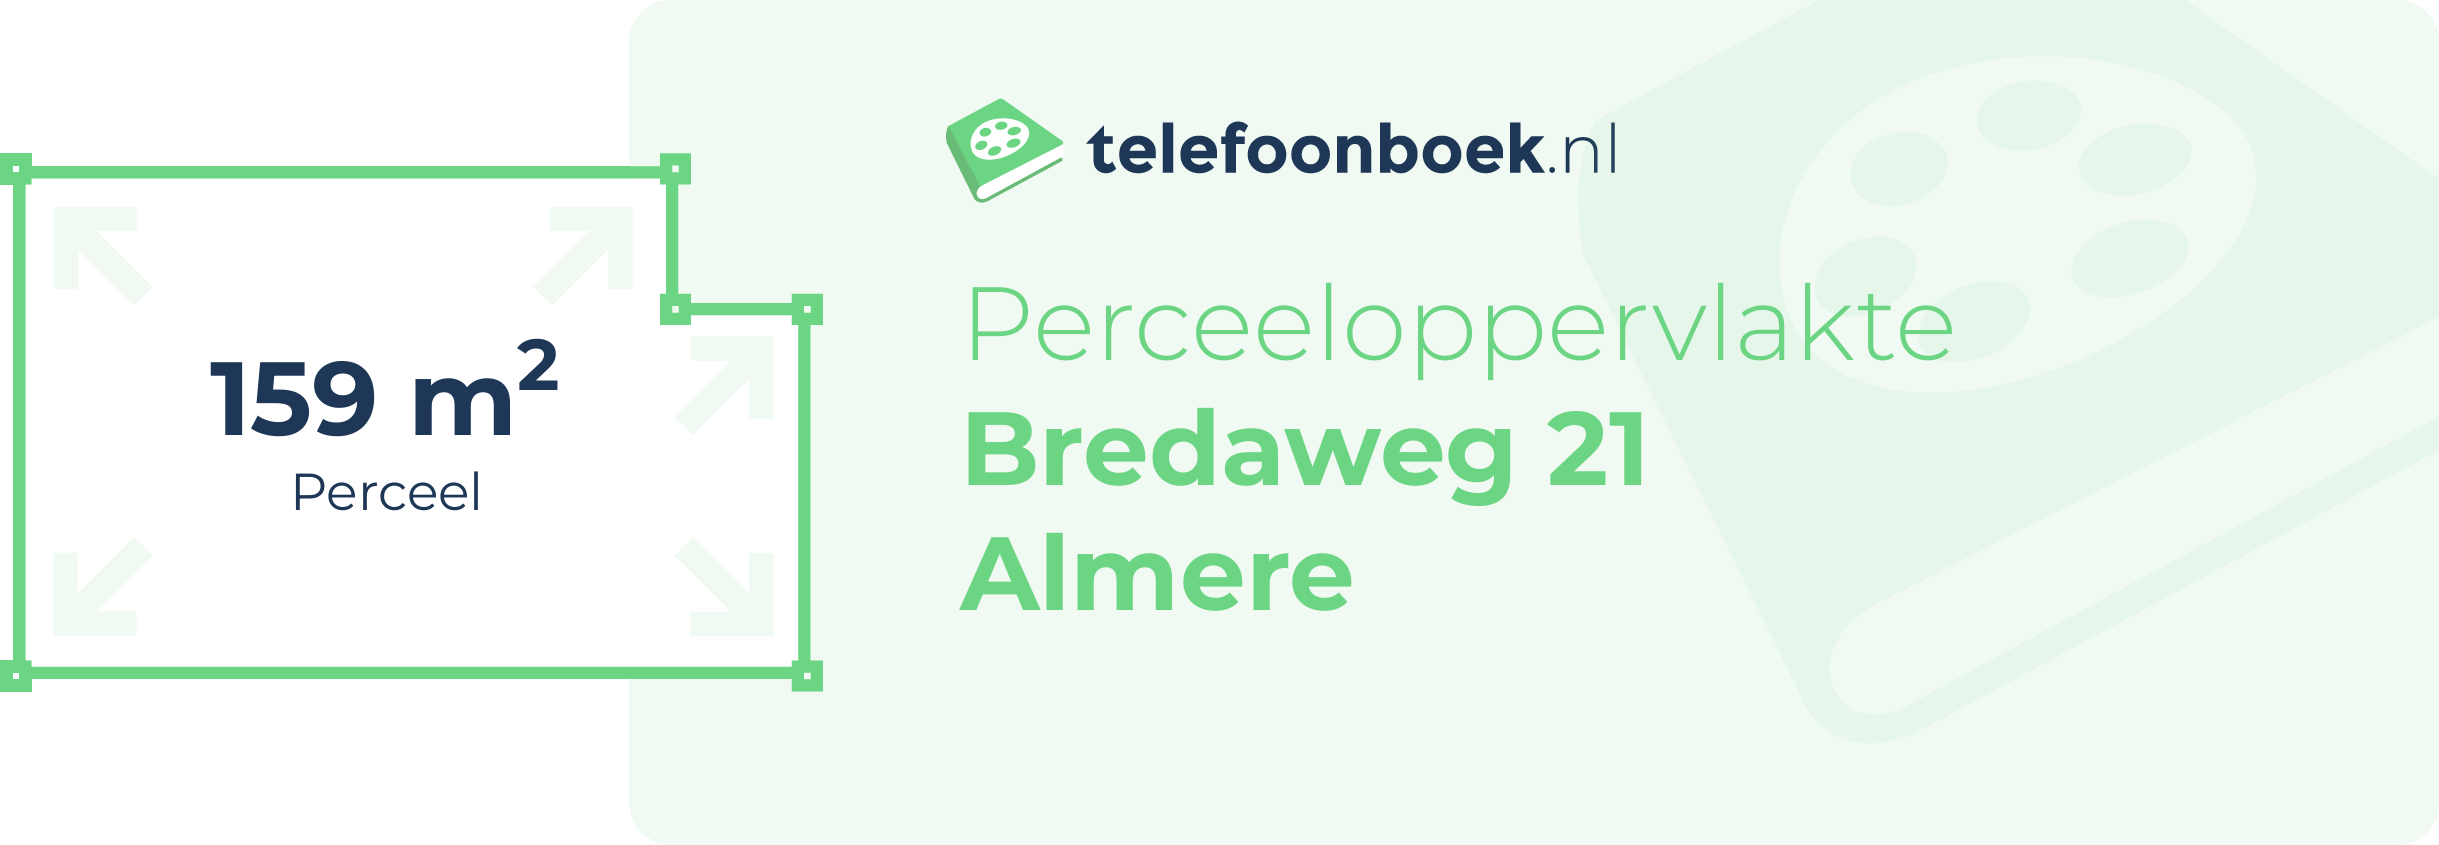 Perceeloppervlakte Bredaweg 21 Almere